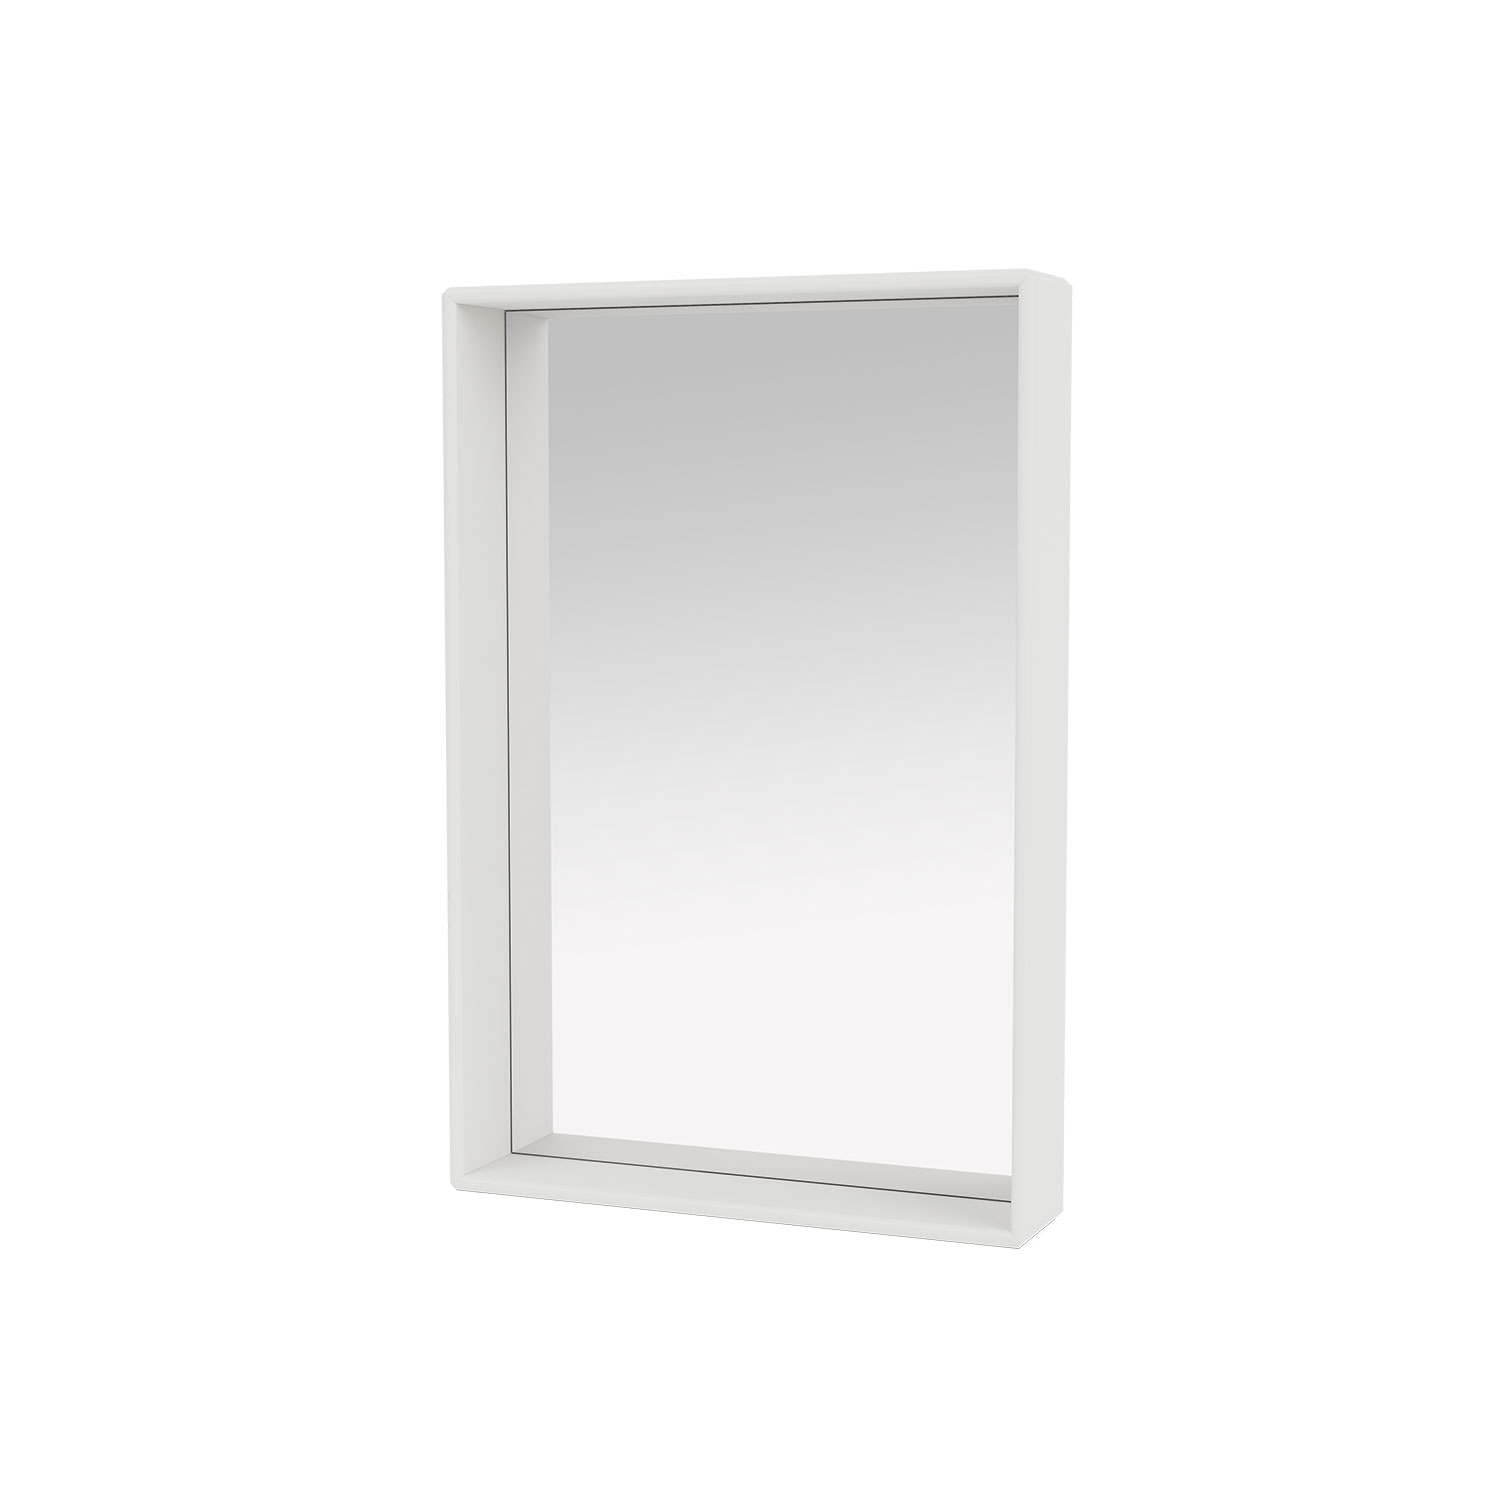 SHELFIE mirror with shelf, White